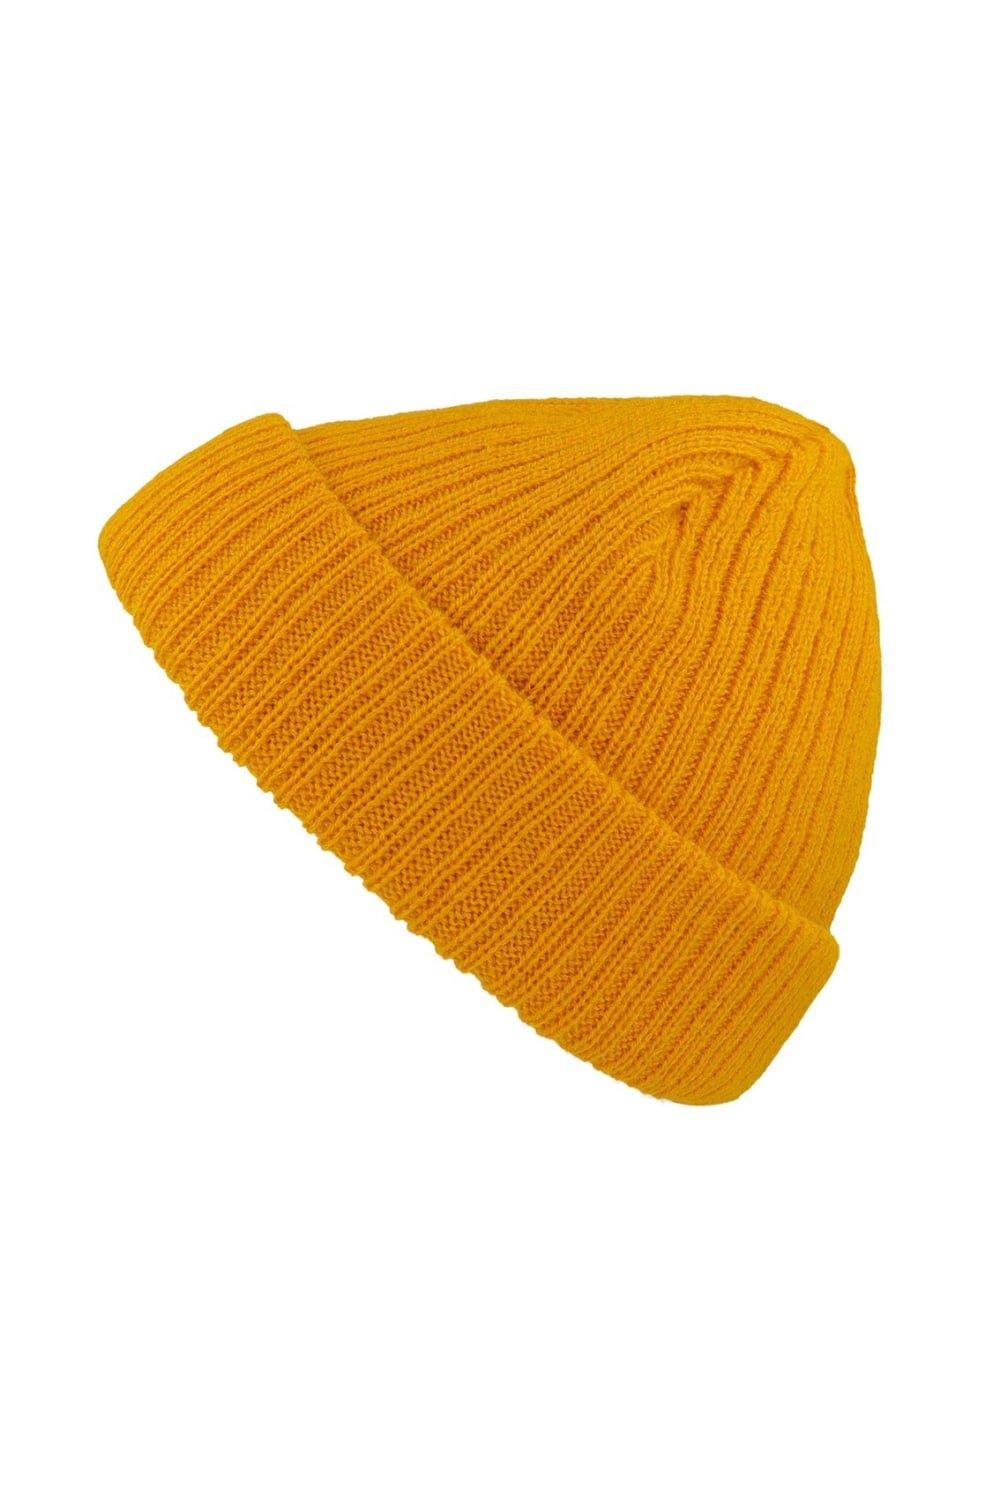 Короткая шапка Docker с отворотом Atlantis, желтый шапка бини 100%акрил размер свободный серый